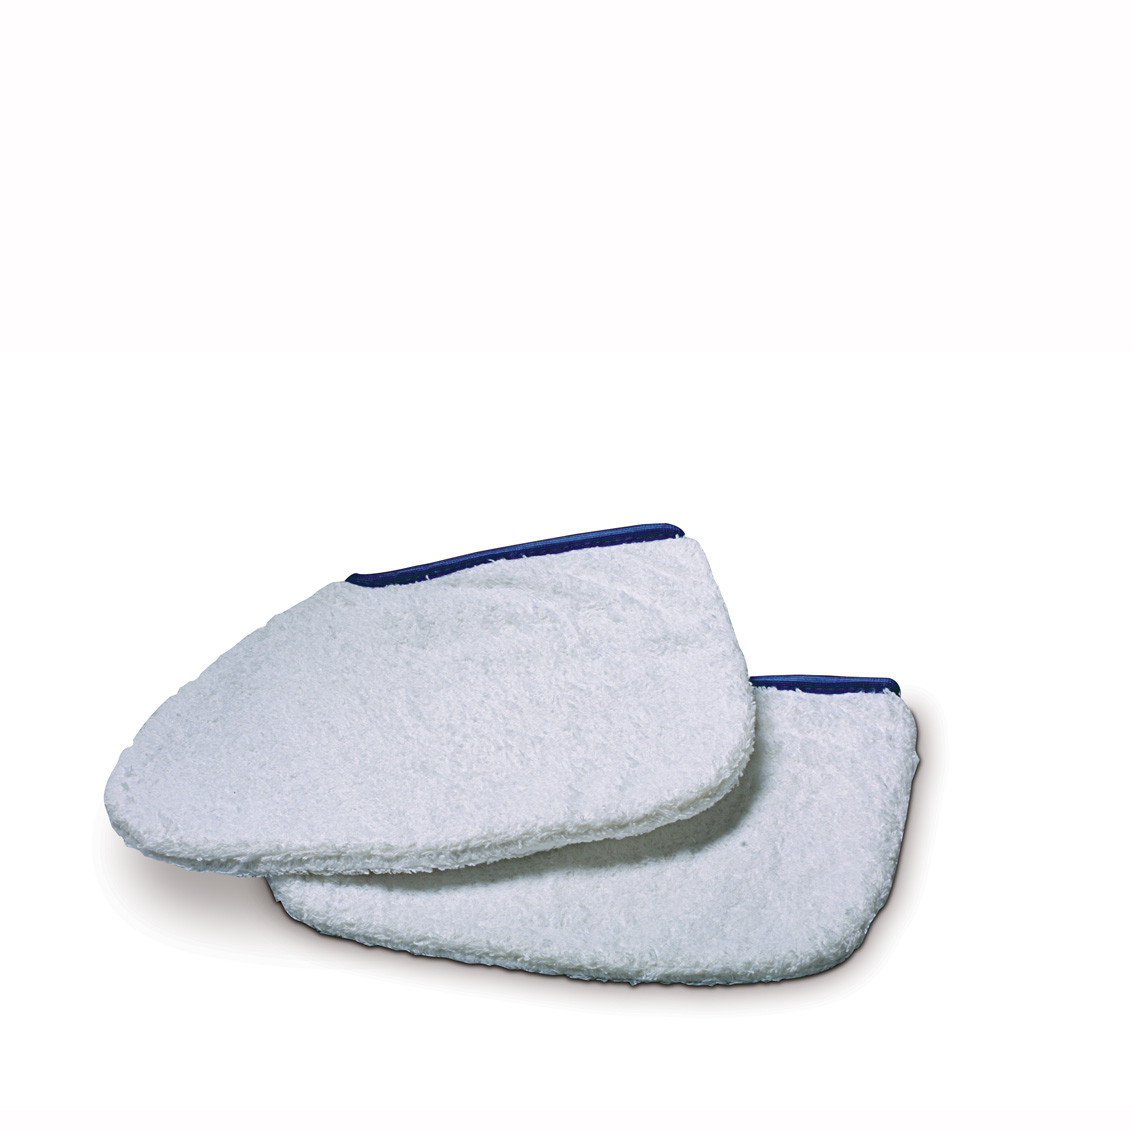 Sponge socks for paraffin treatment 1 pair